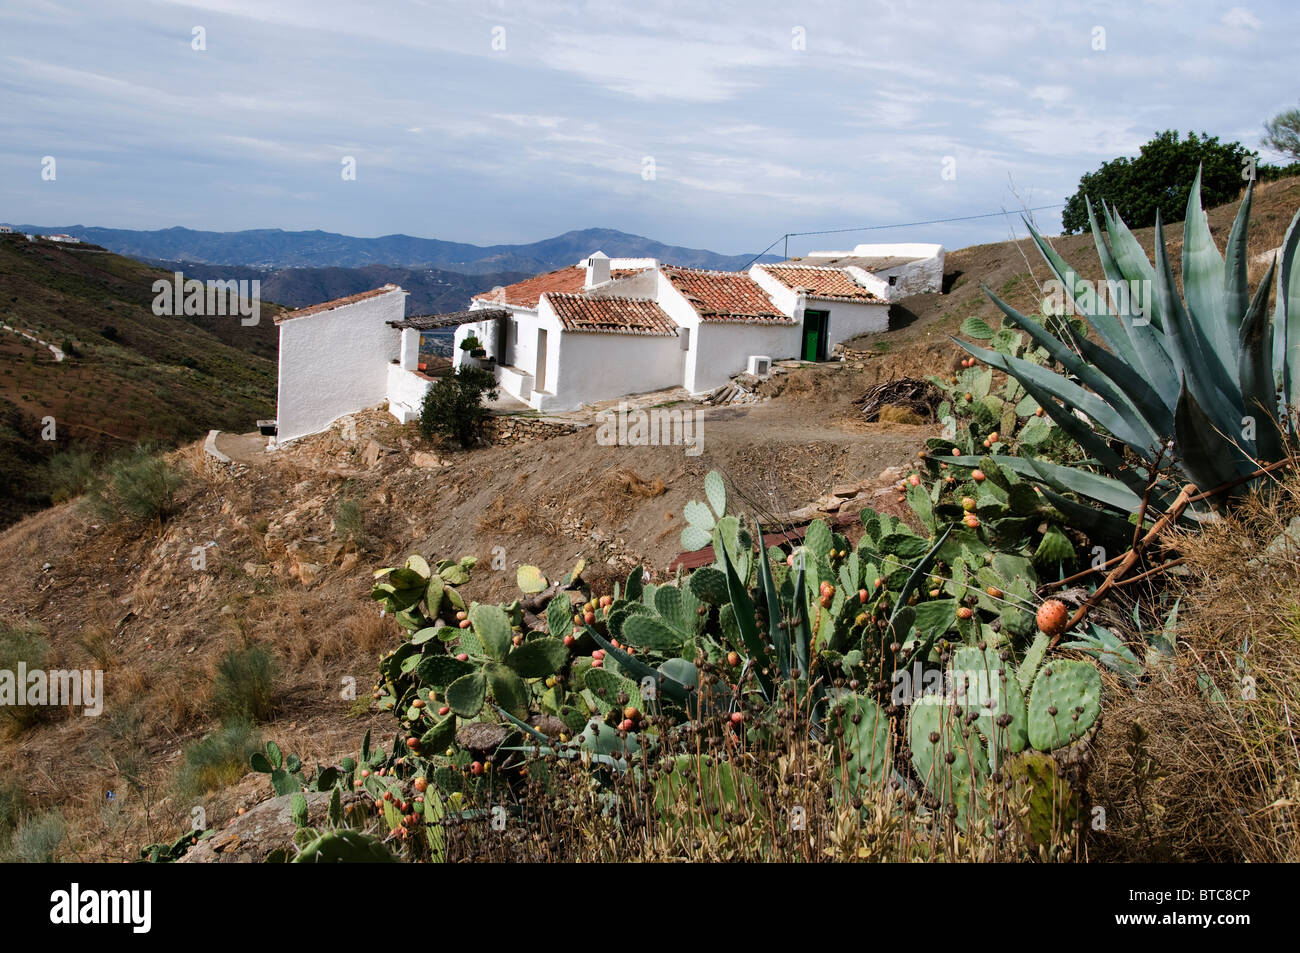 Spain Spanish Andalusia Mountain White Farm house Stock Photo